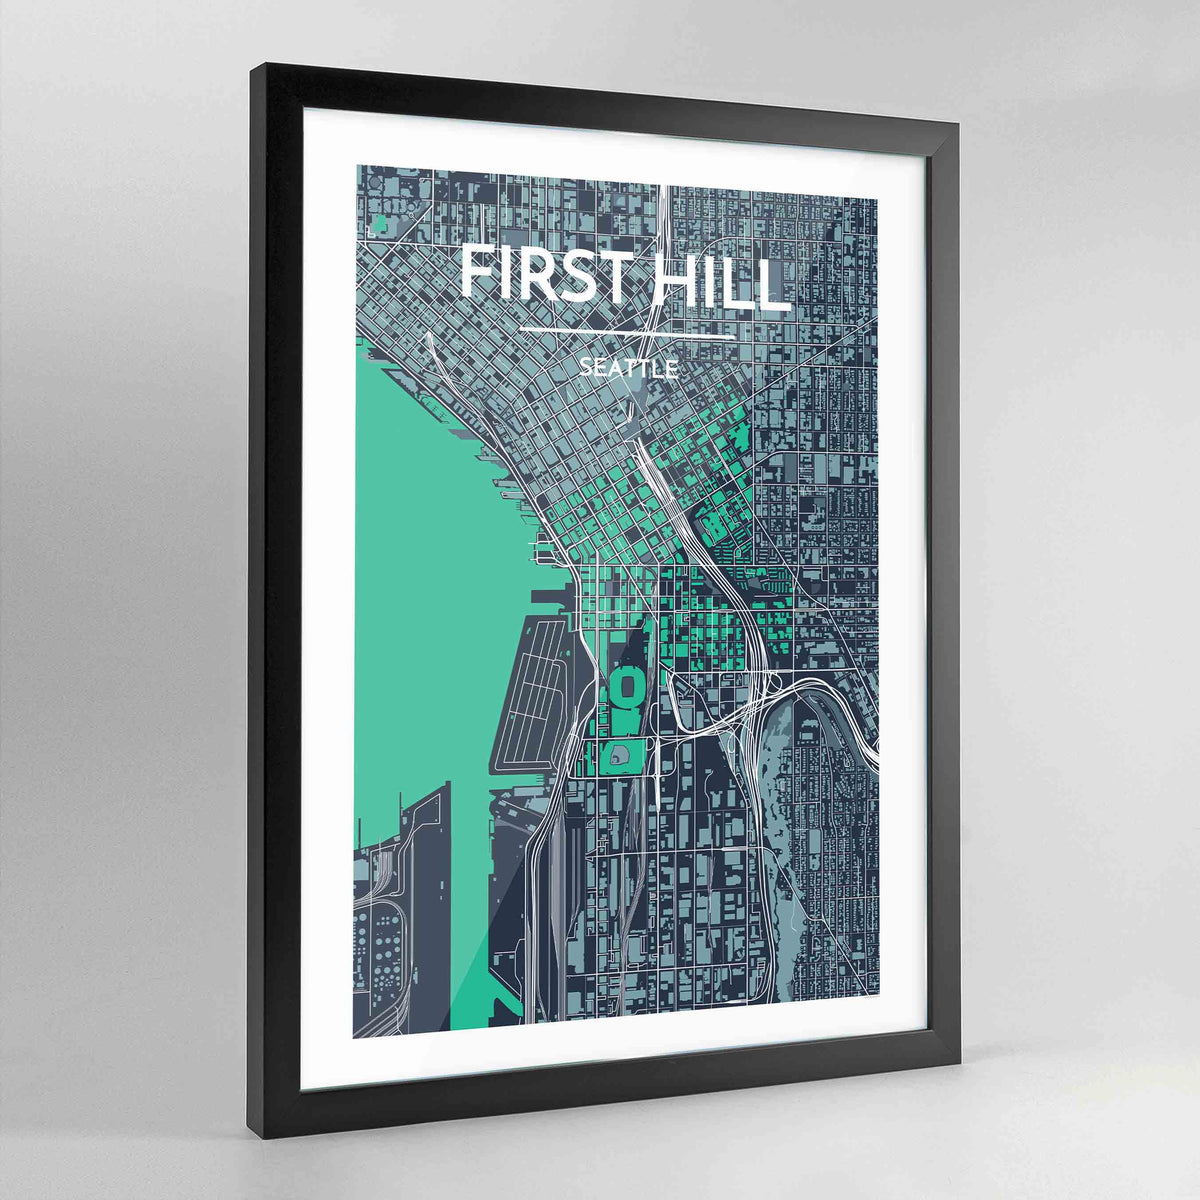 Framed Seattle First Hill Neighbourhood City Map Art Print - Point Two Design